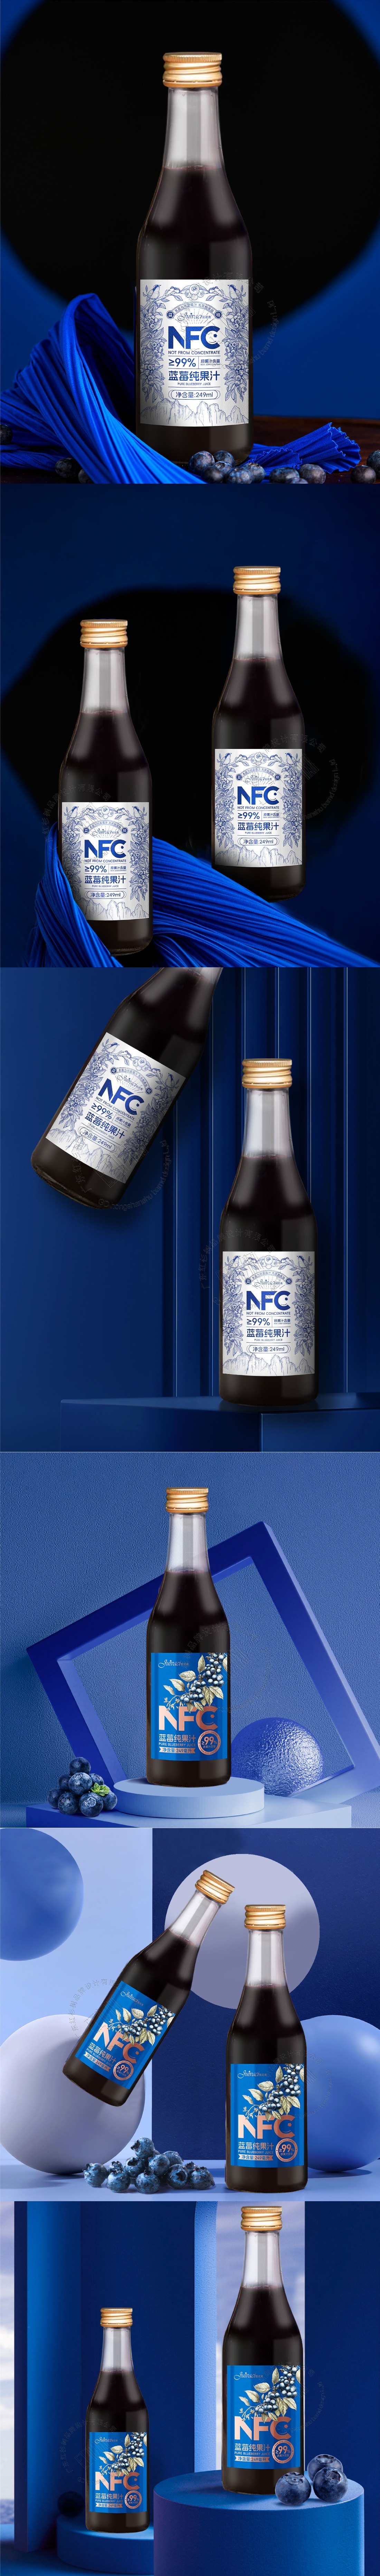 蓝莓果汁饮料-插画瓶贴包装设计